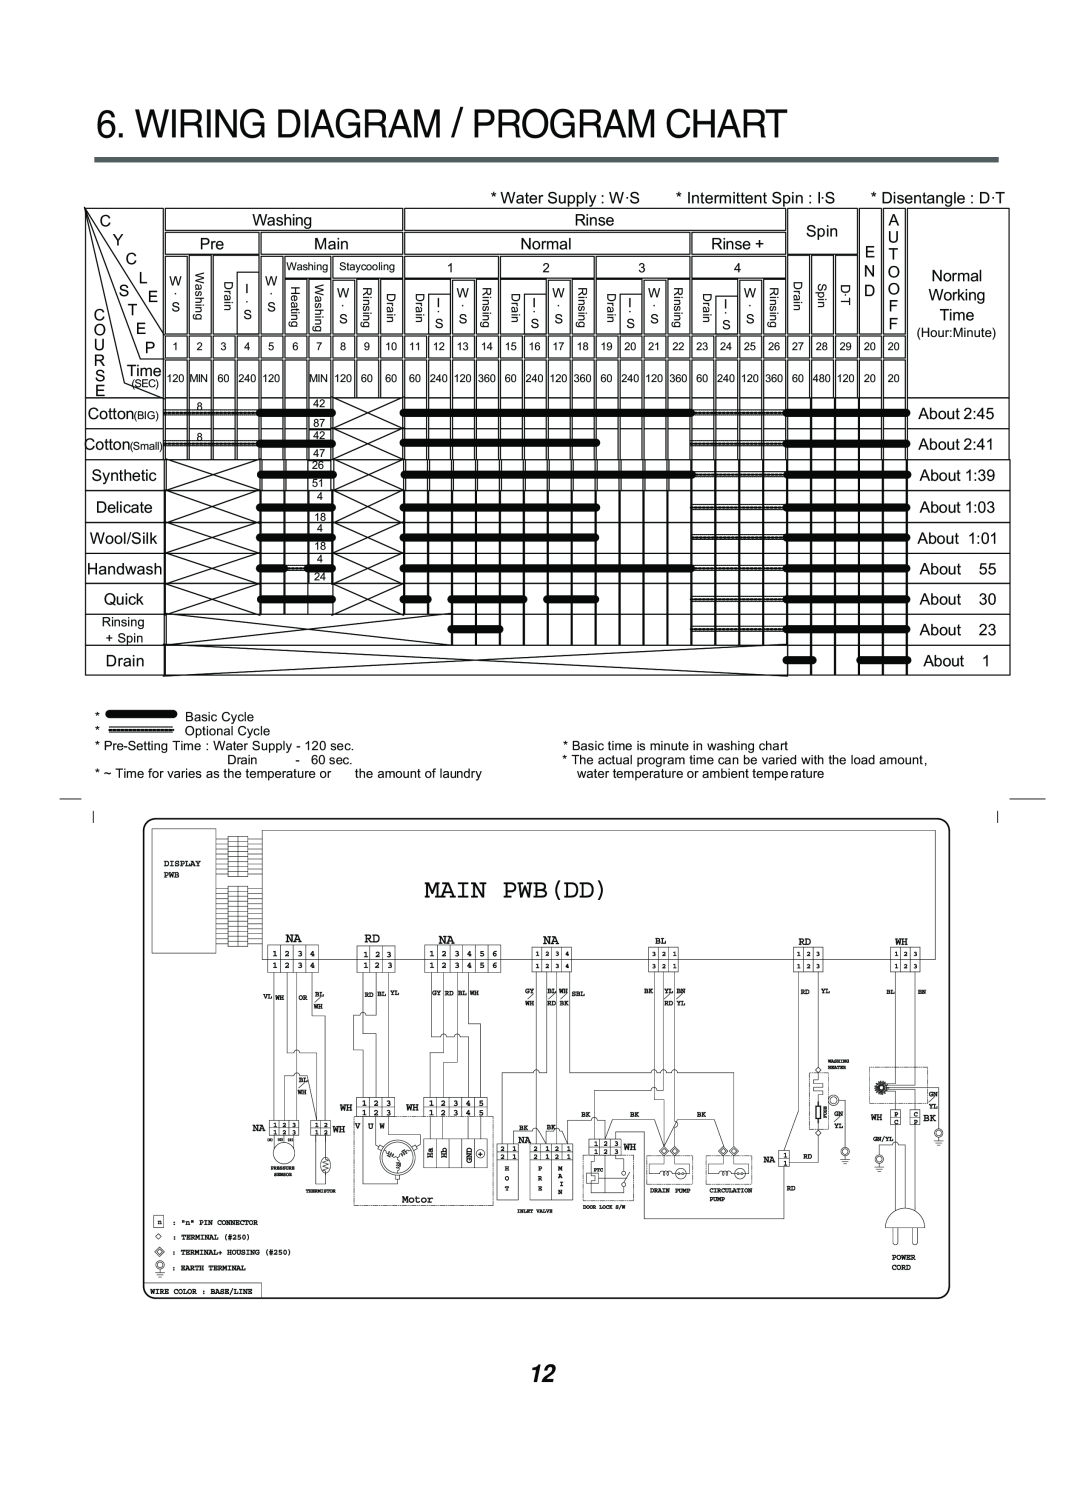 LG Electronics 10220(5)FDB(N), WD(M)-14220(5)FD, WD(M)-10220(5)FD, 16221FD Wiring Diagram / Program Chart, Main Pwbdd 